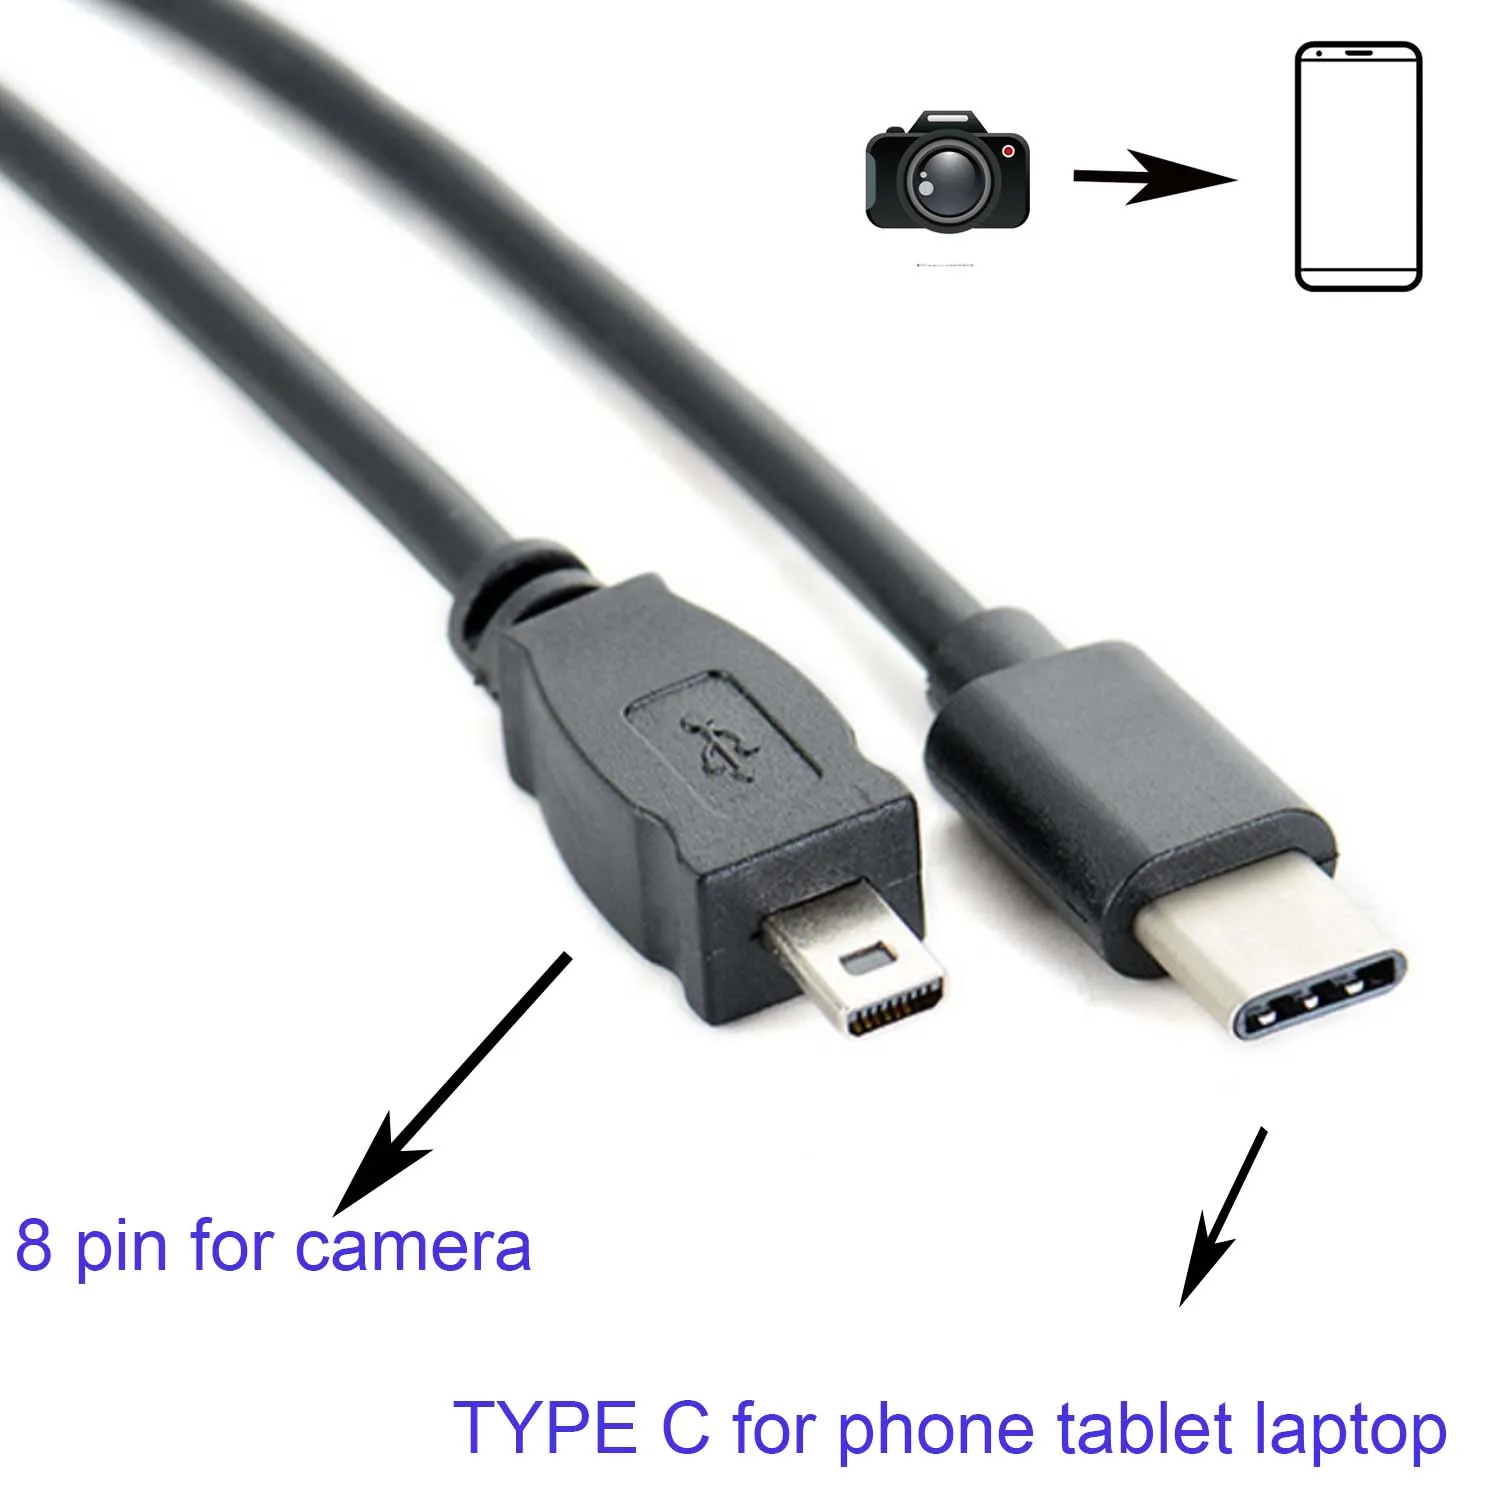 

OTG-кабель TYPE C для камеры Casio Exilim EX-S8PK S8SR EX-S9 S9BK S9PE S9PK S9SR Для Редактирования Фото и видео телефона